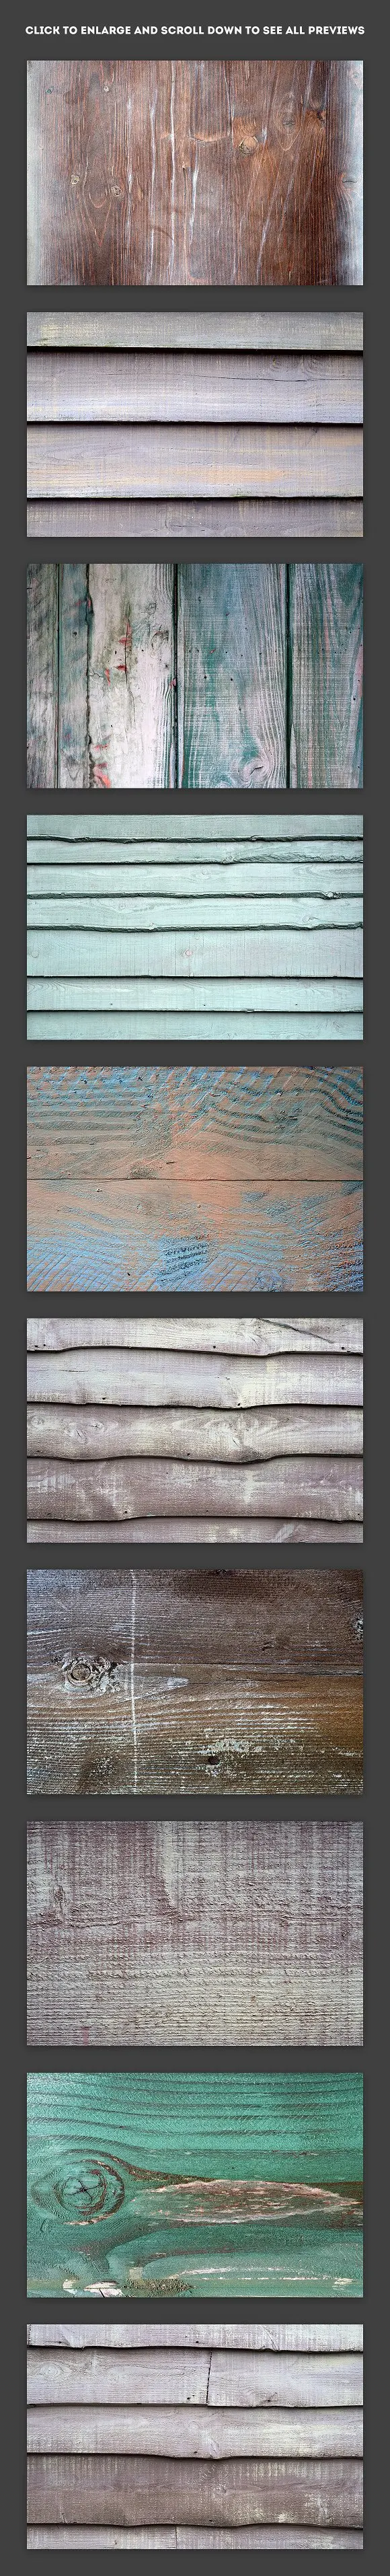 平面素材-35张超高清多彩的天然彩色的木头背景纹理JPG图片素材(6)